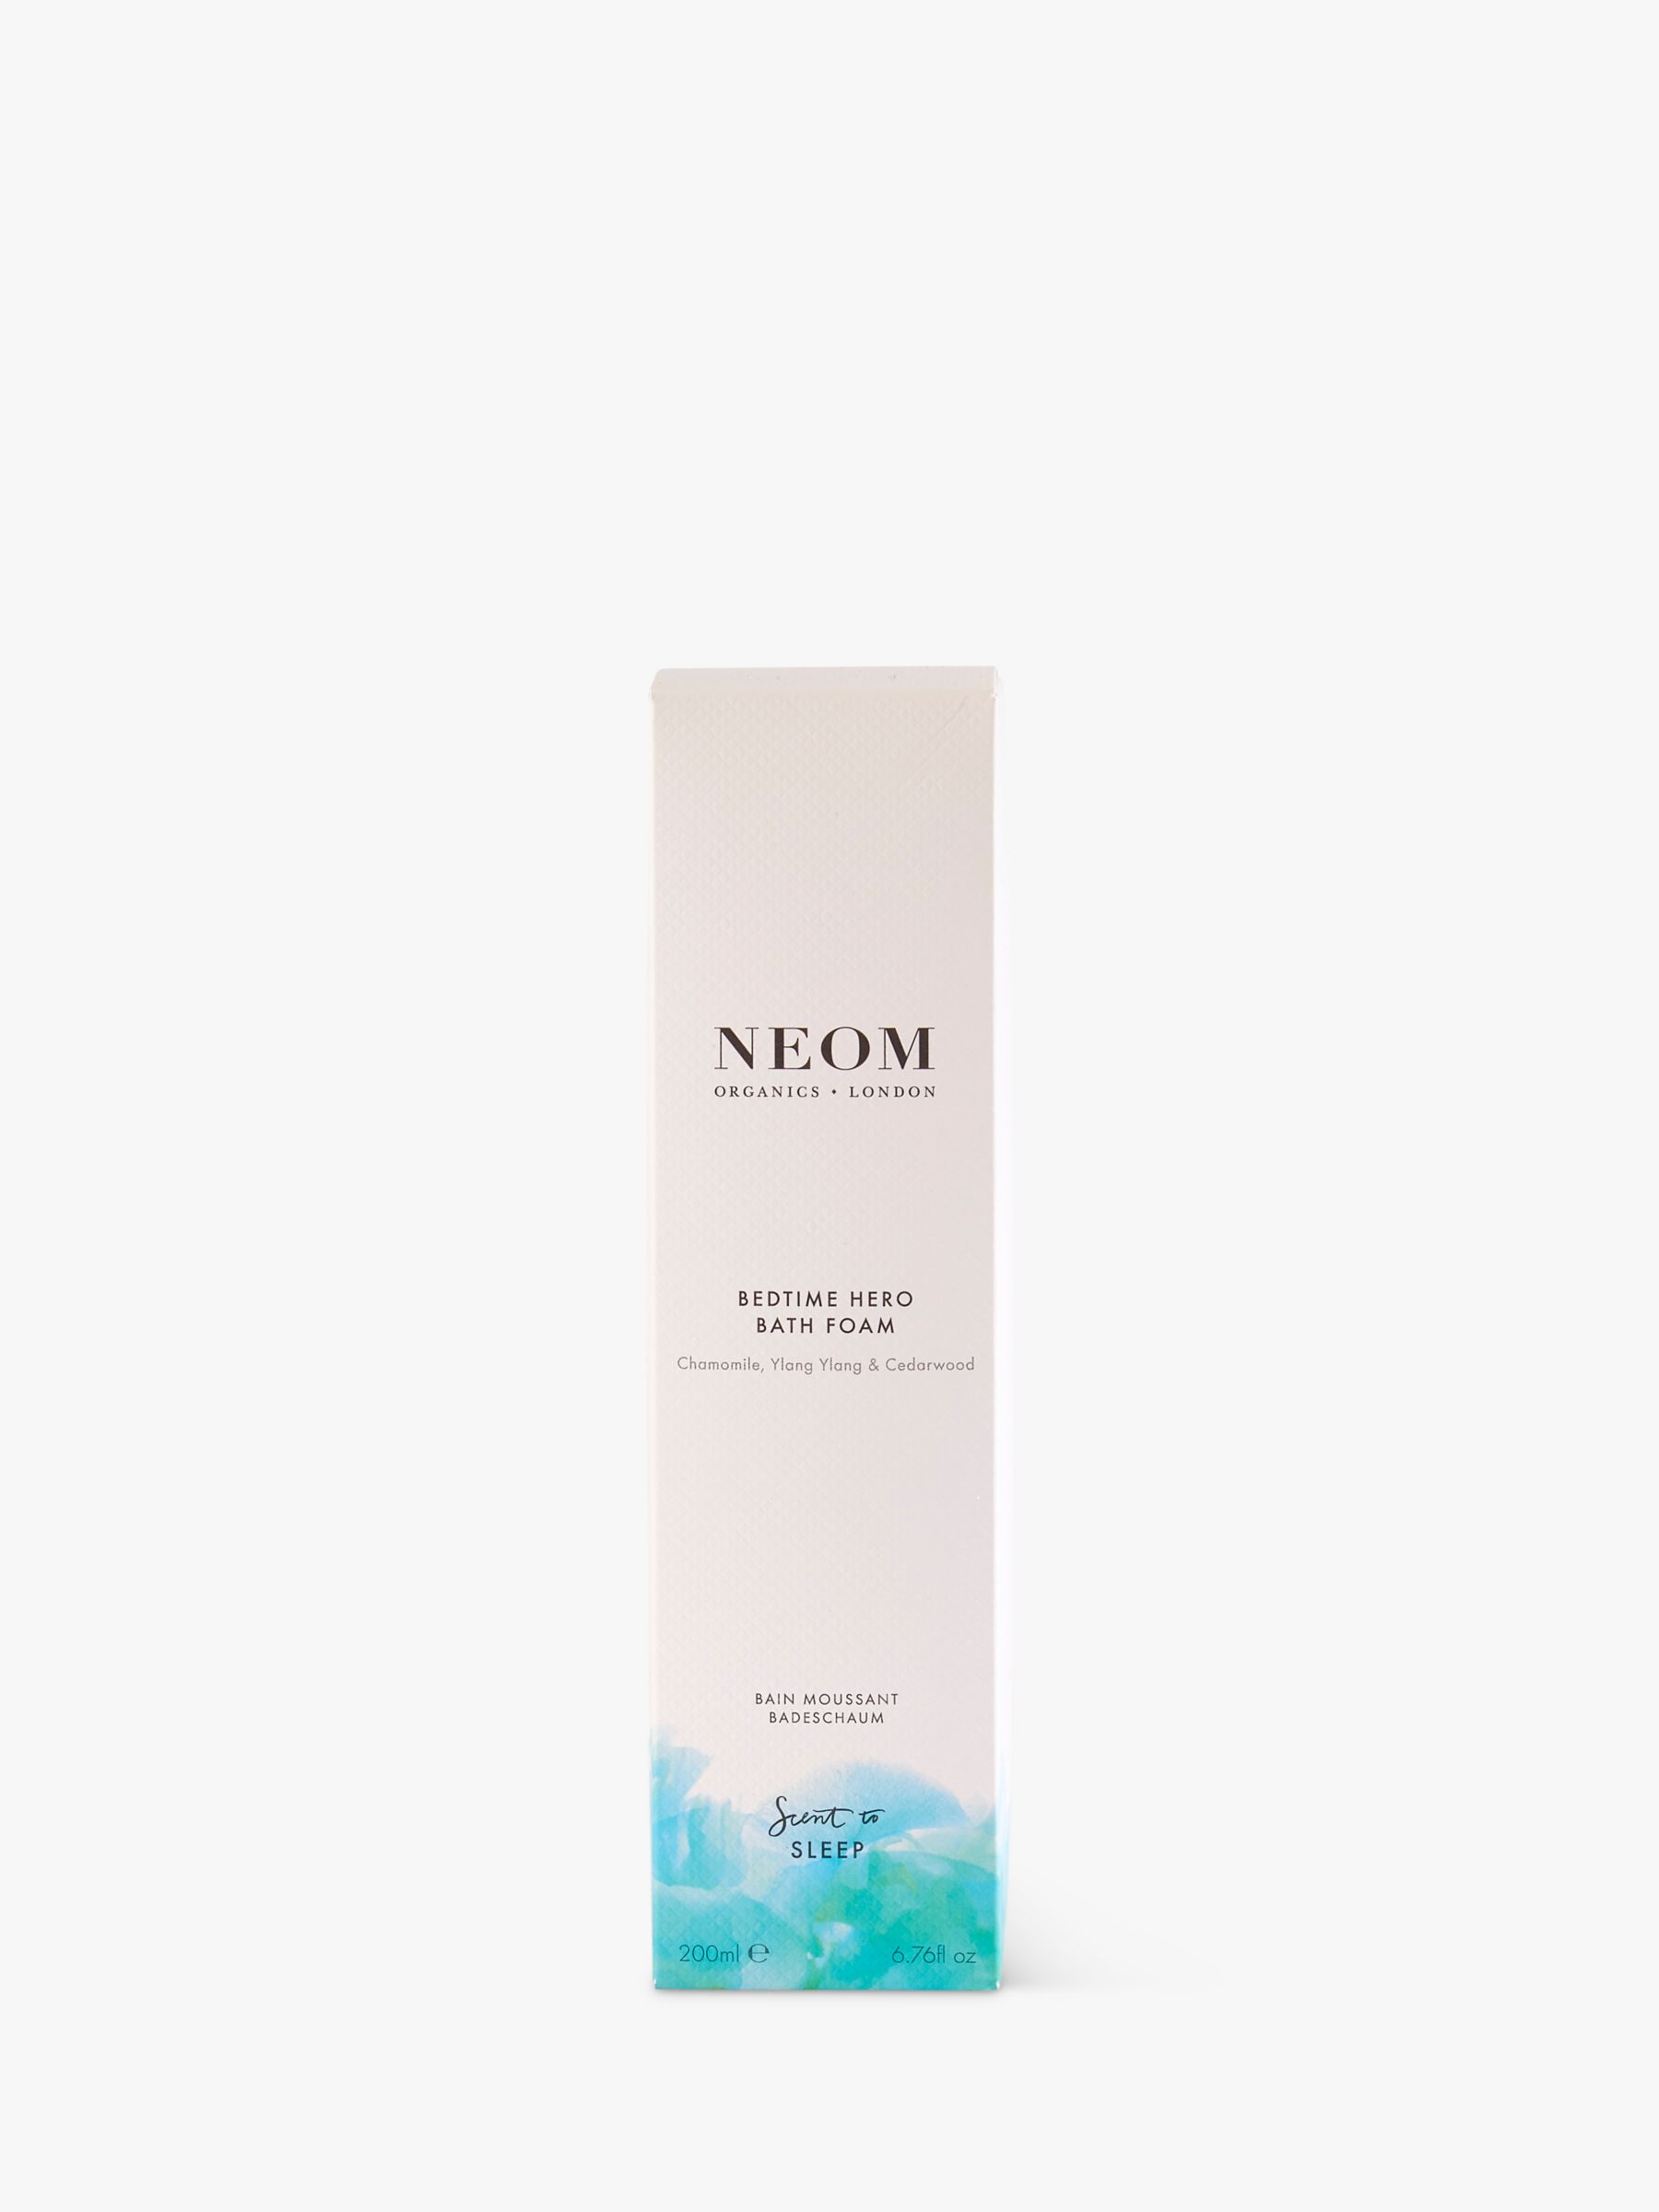 Neom Organics London Bedtime Hero Bath Foam, 200ml 3